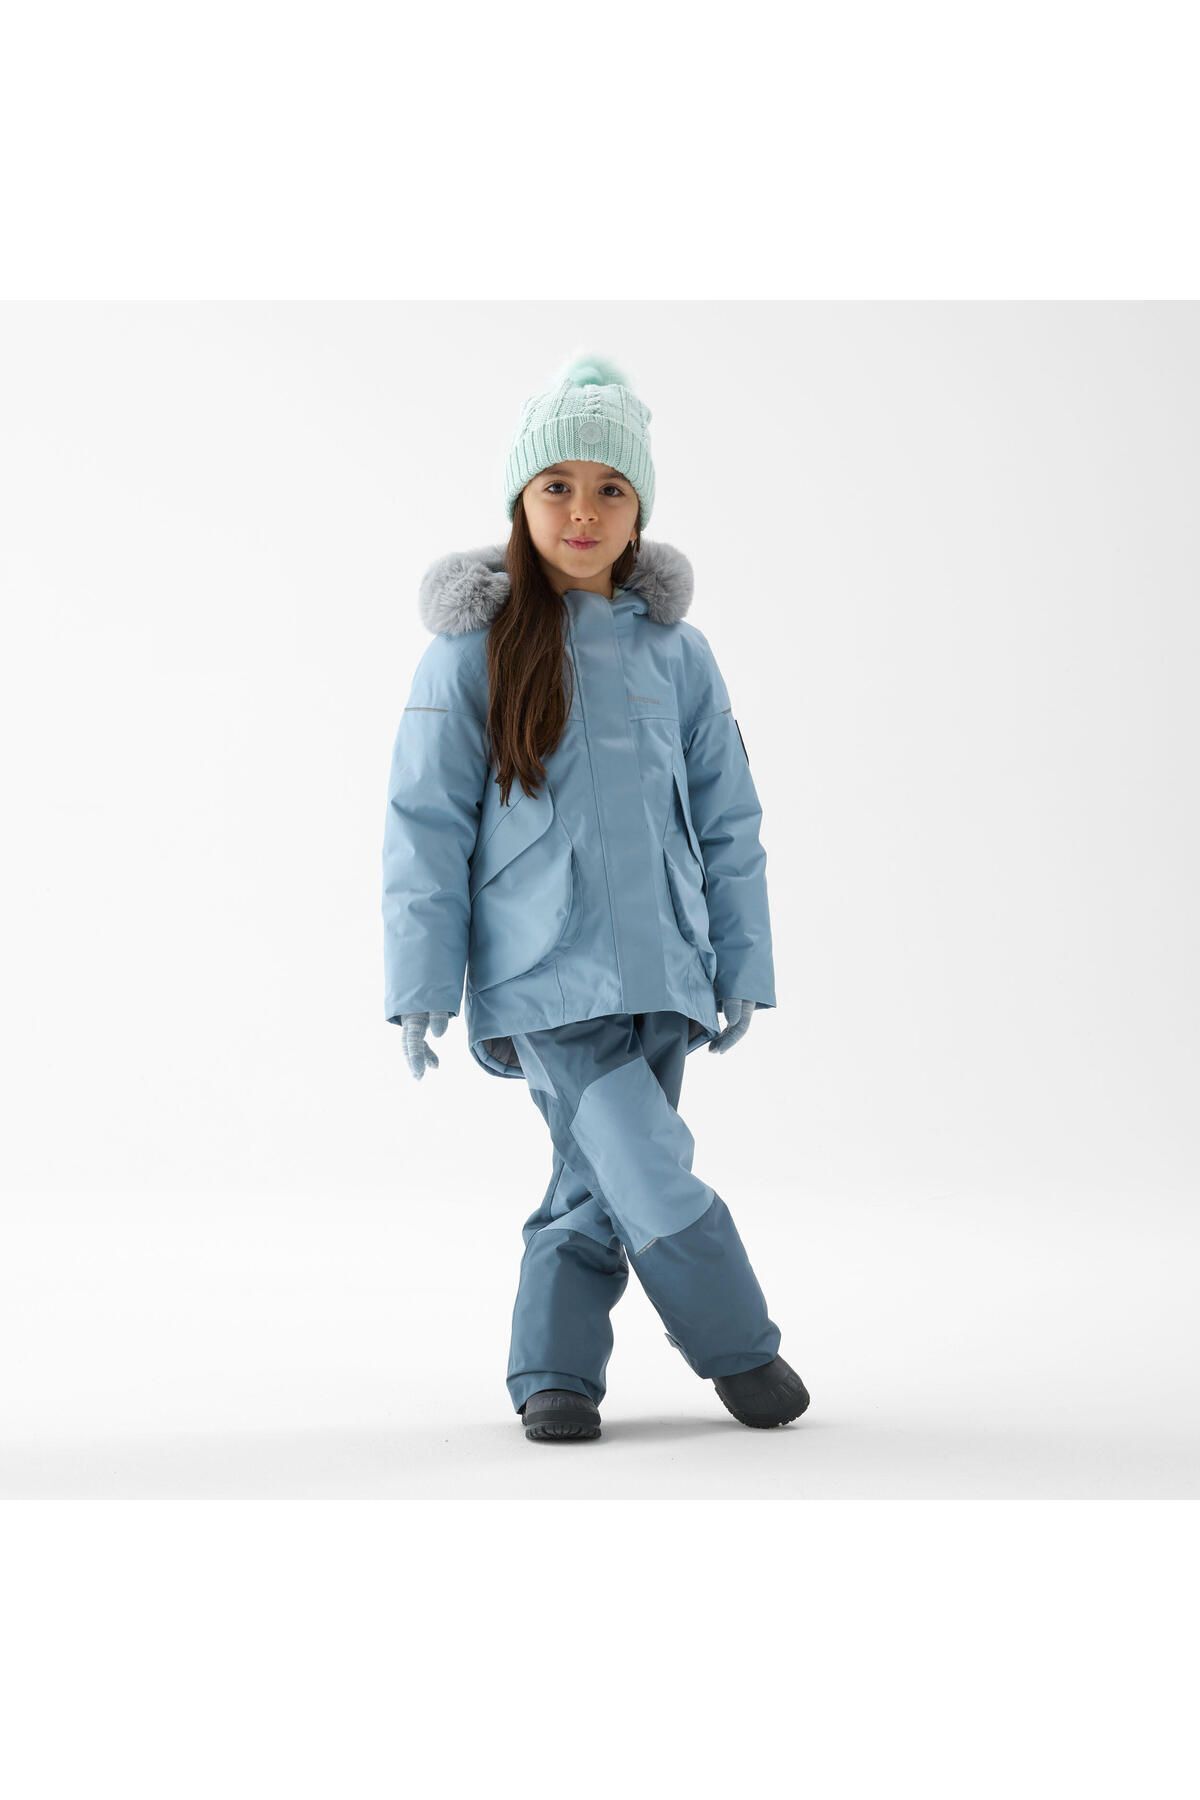 Decathlon Çocuk Sıcak Tutan Outdoor Kar Pantolonu - Mavi / Gri - SH500 - -3°C